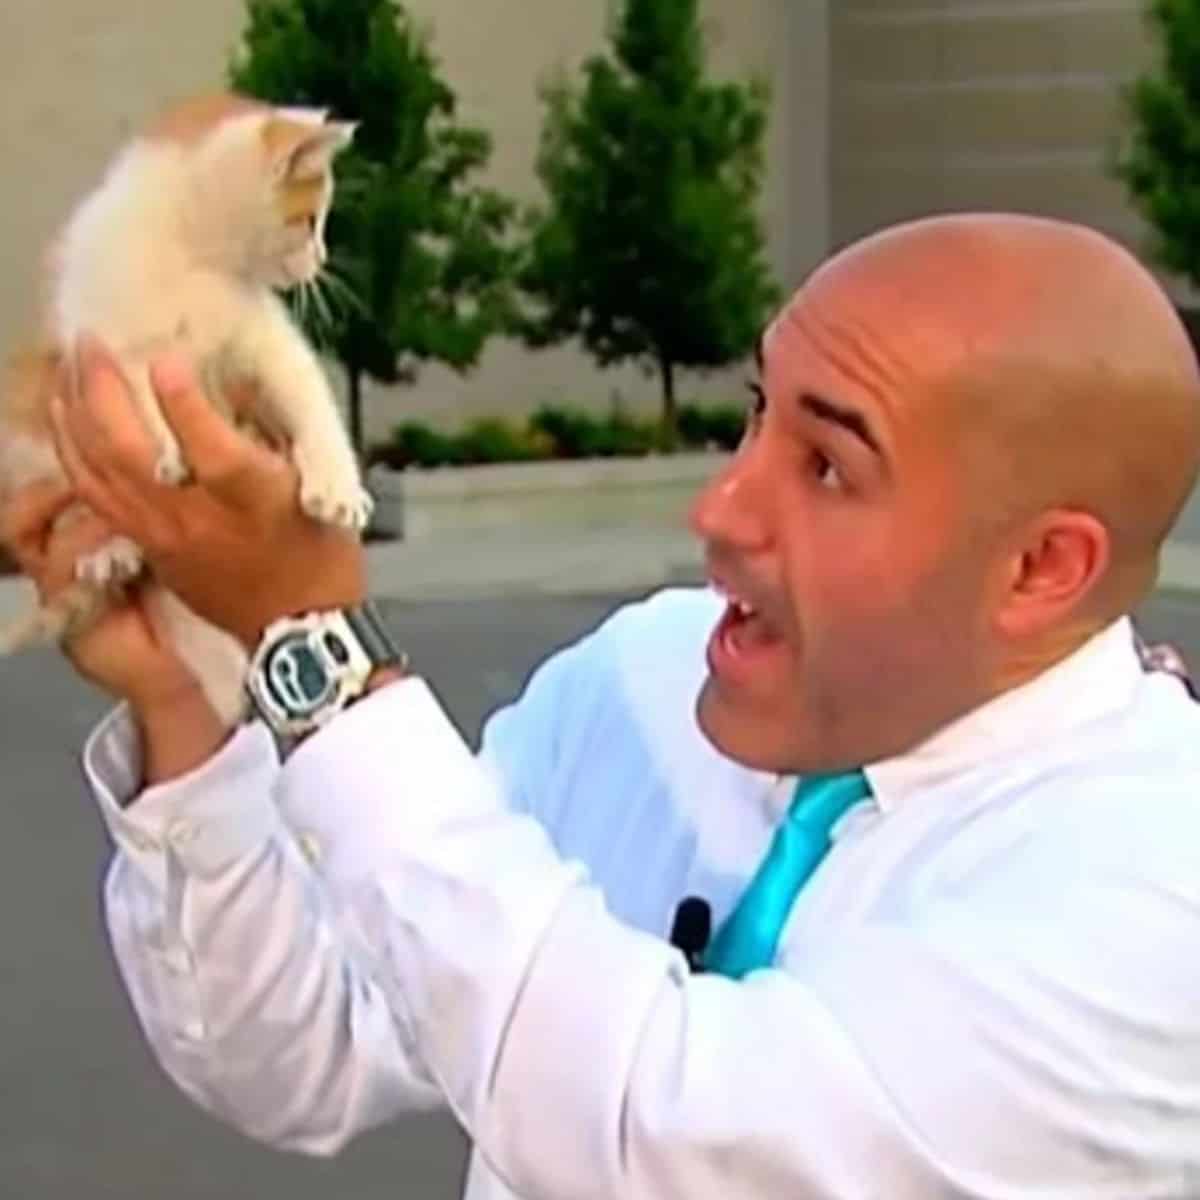 reporter holding a kitten